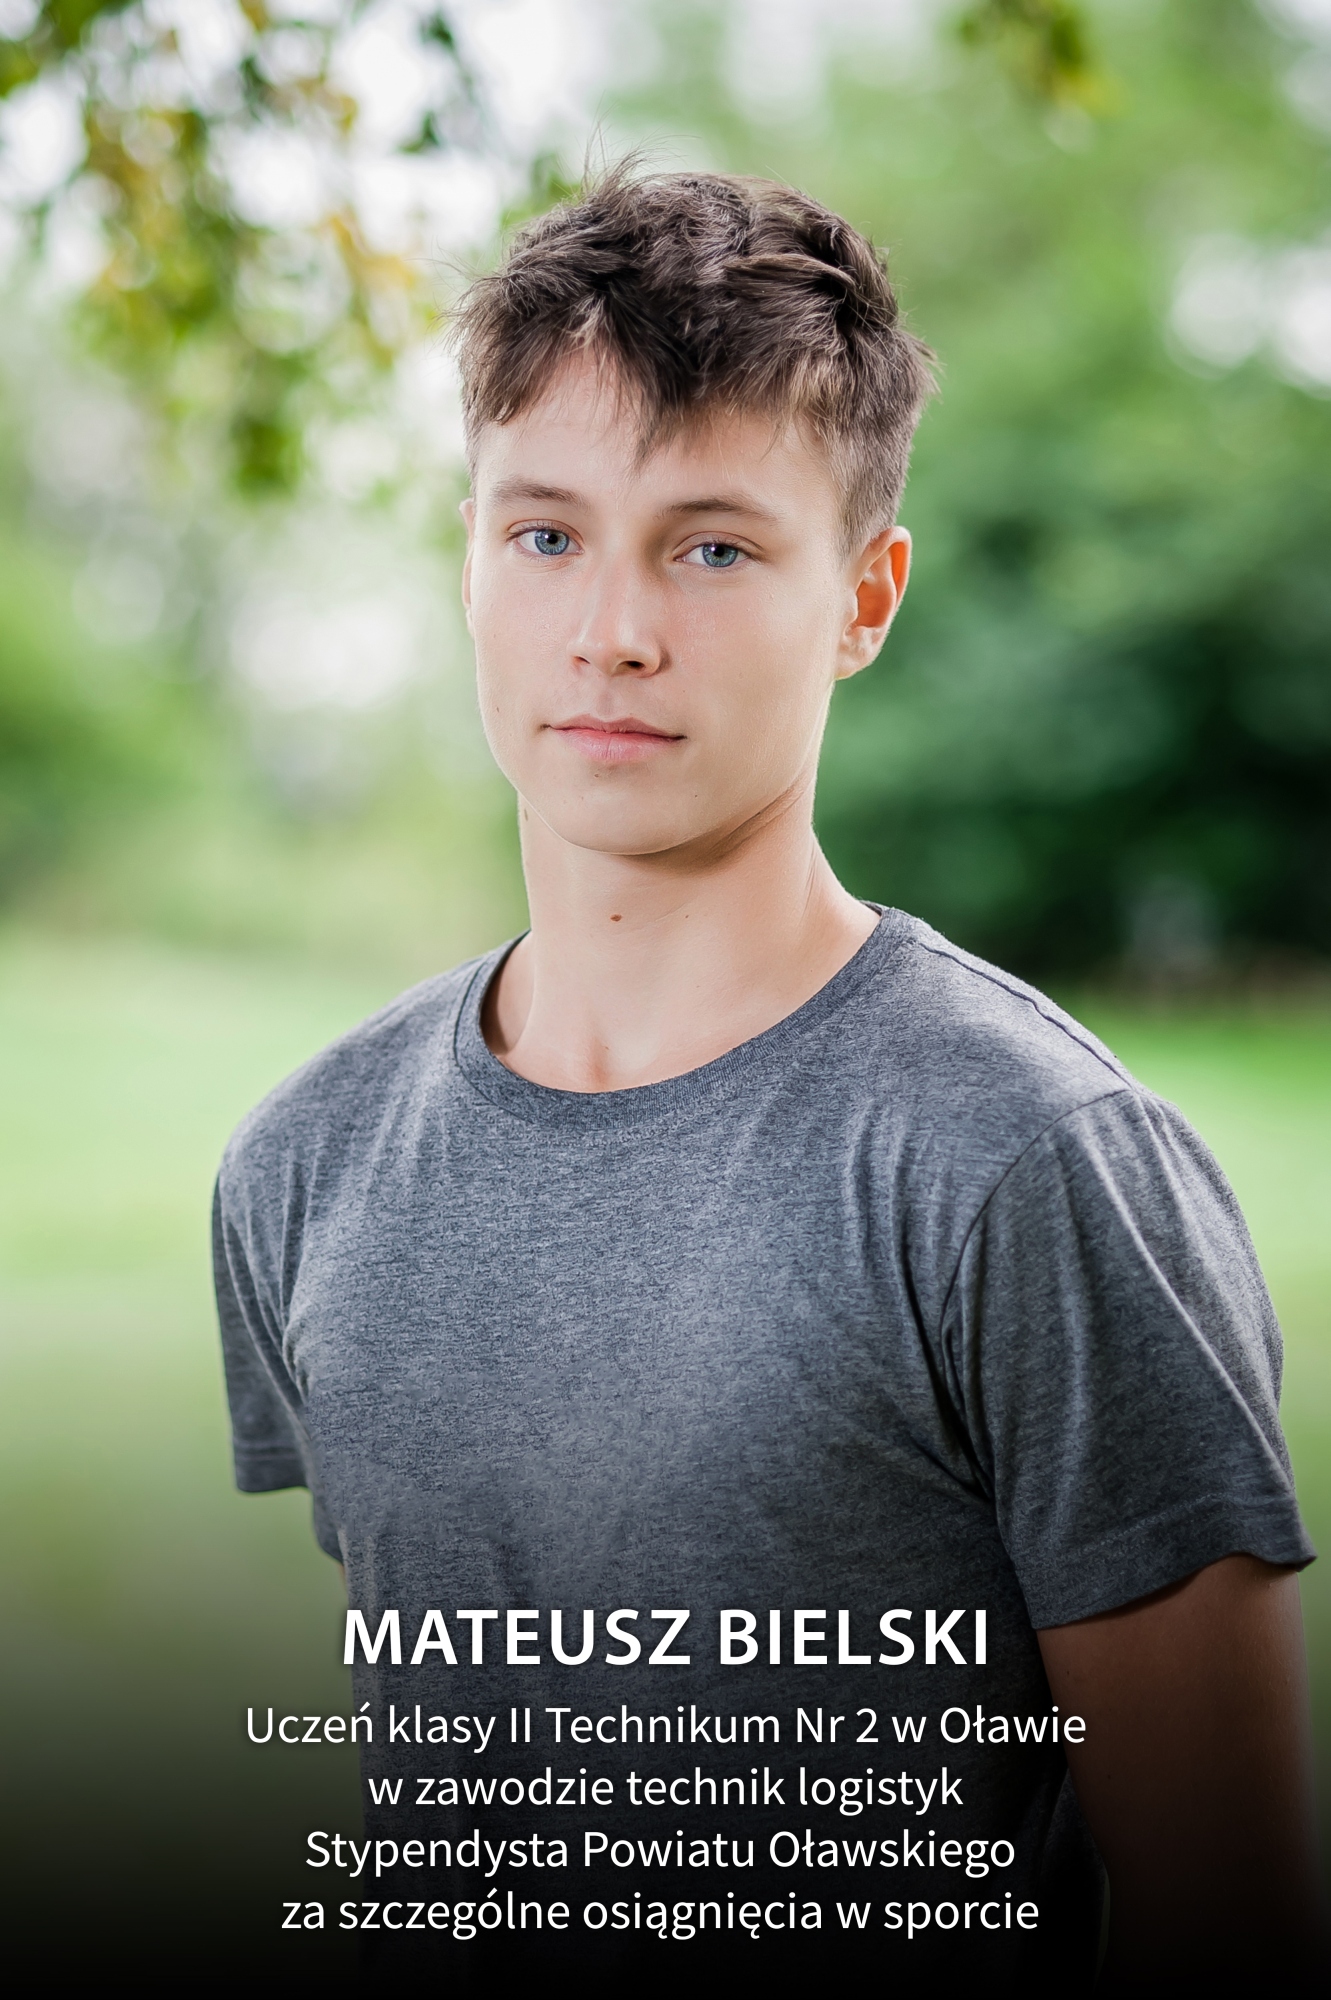 Mateusz Bielski